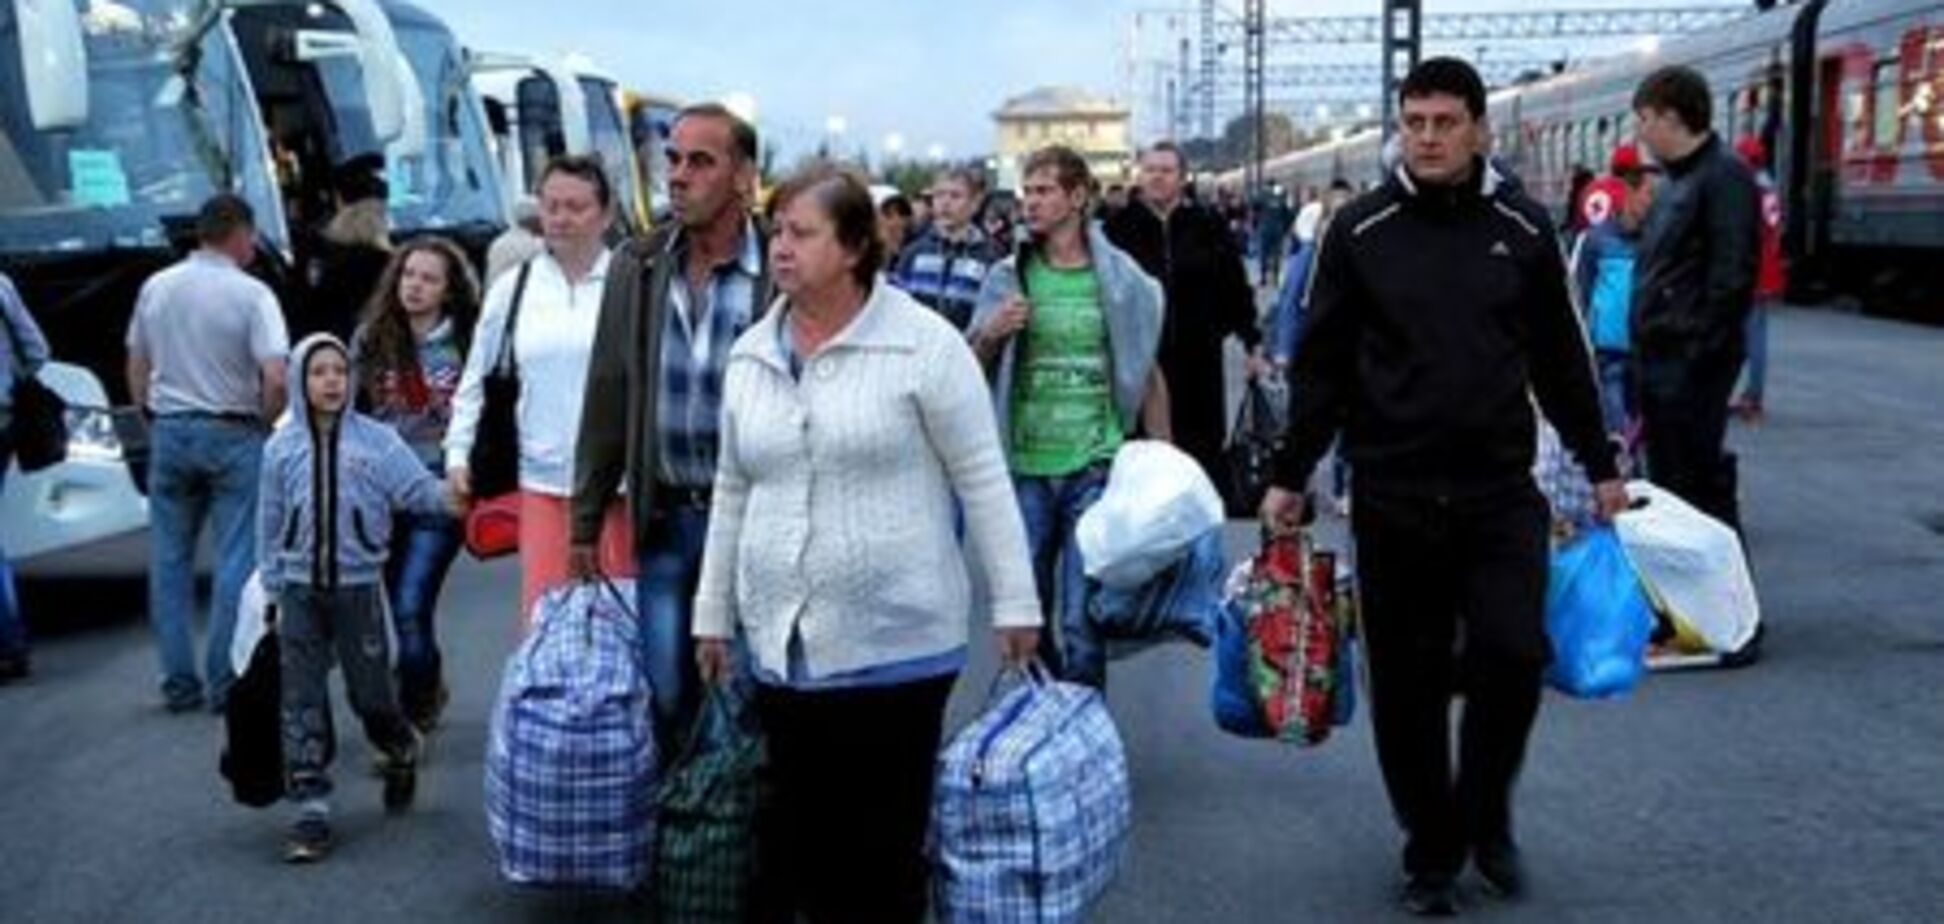 Украину настигнет демографический кризис: опубликованы шокирующие цифры